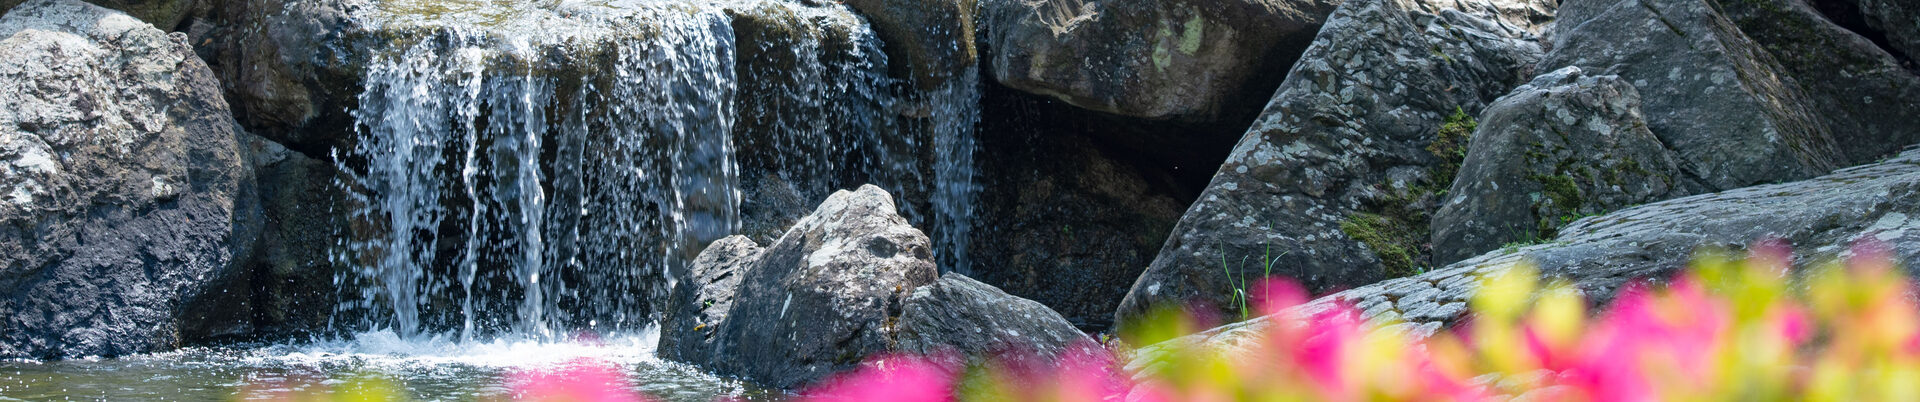 Der Wasserfall im Japanischen Garten in der Rheinaue